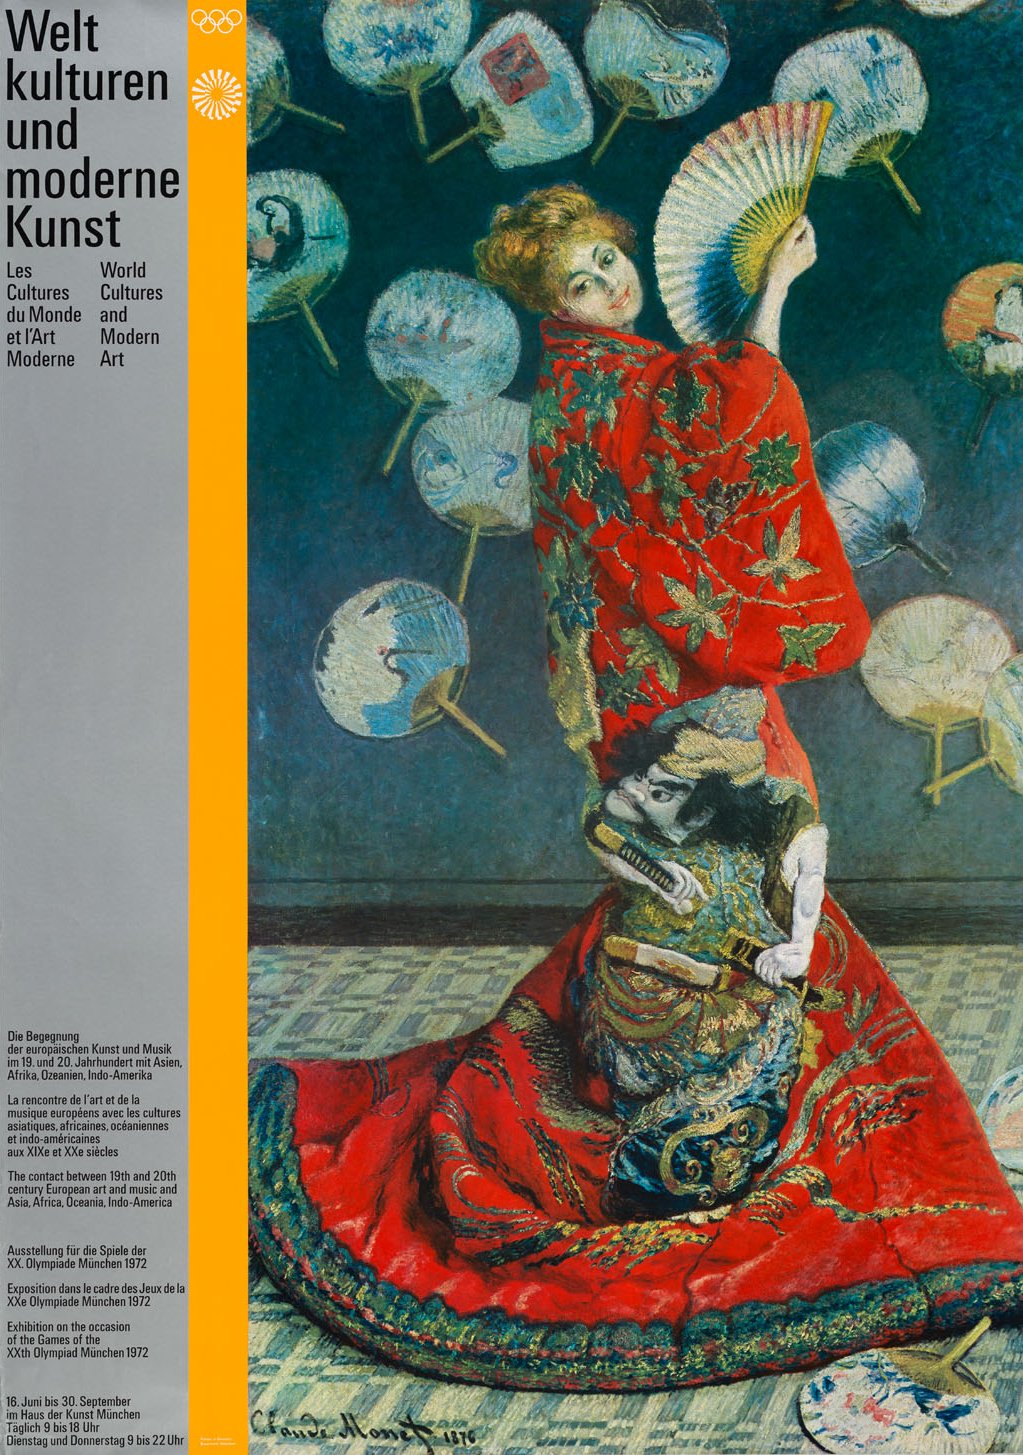 Plakat mit dem Gemälde einer Frau in japanischer Bekleidung, umringt von Fächern.